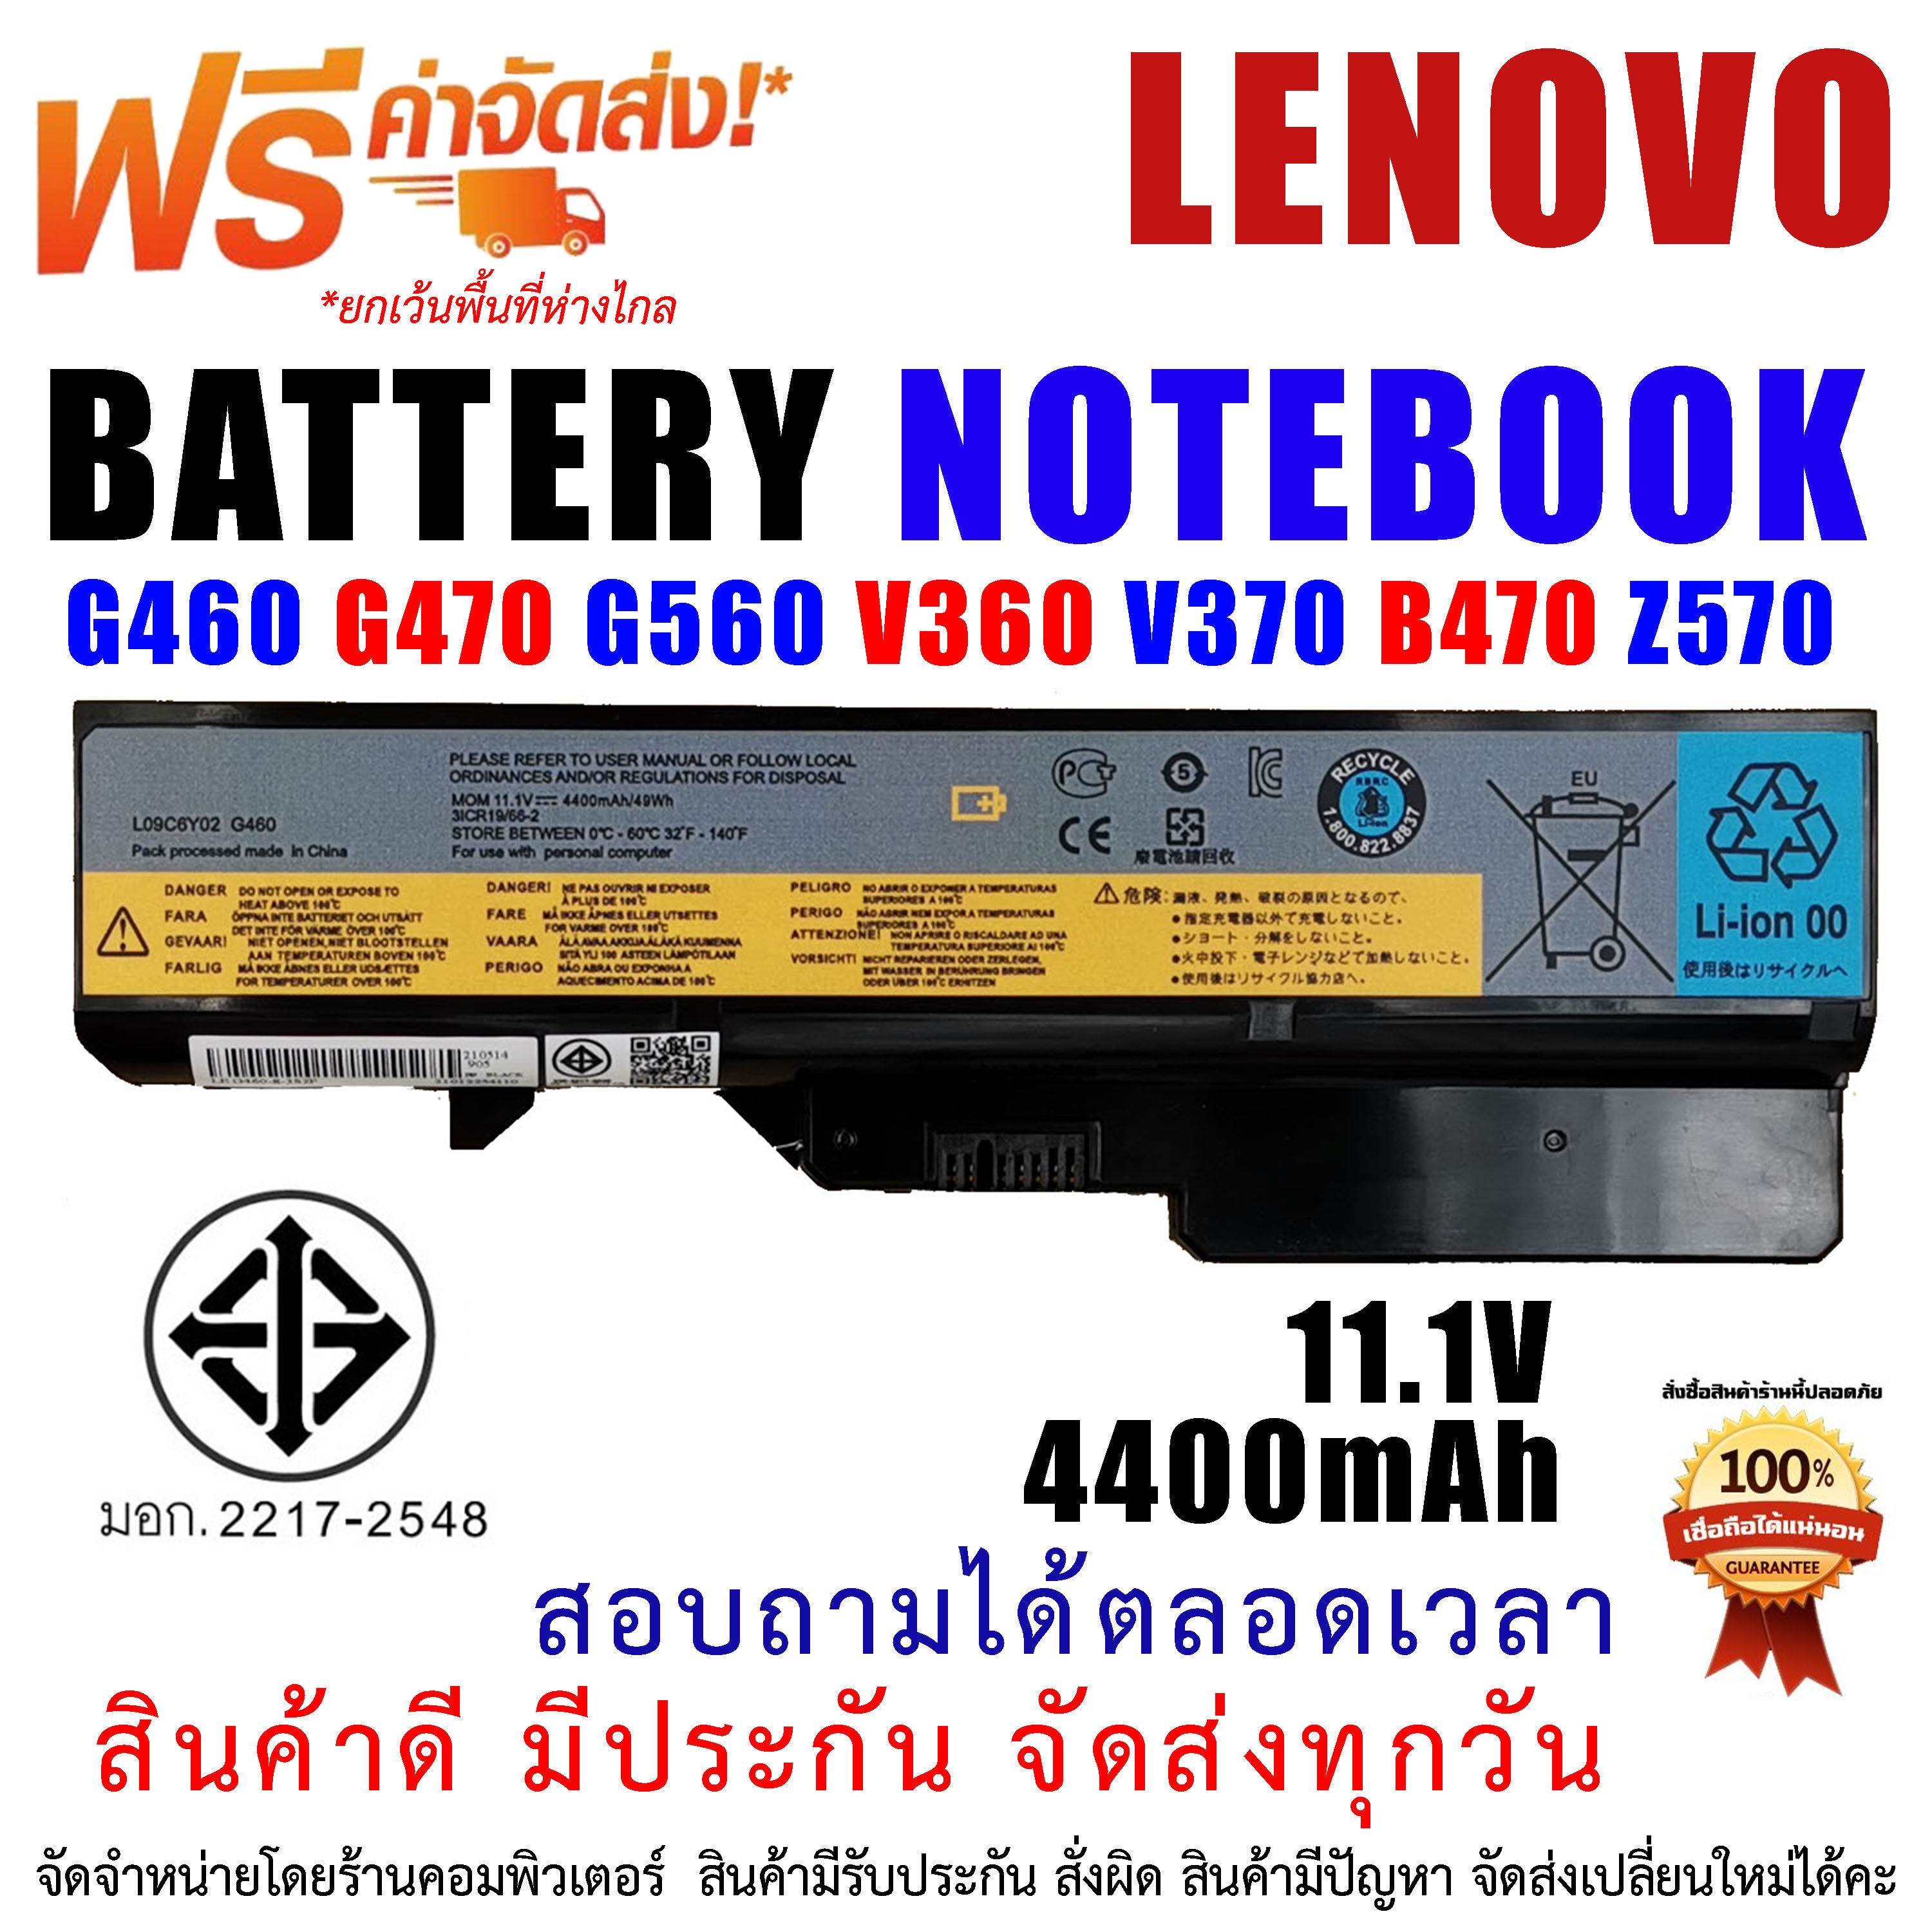 แบตเตอรี่ สำหรับ โน๊ตบุ๊ค เลอโนโว่  Ideapad G460 G470 G560 V360 V370 B470 Z570 Battery for notebook lenovo